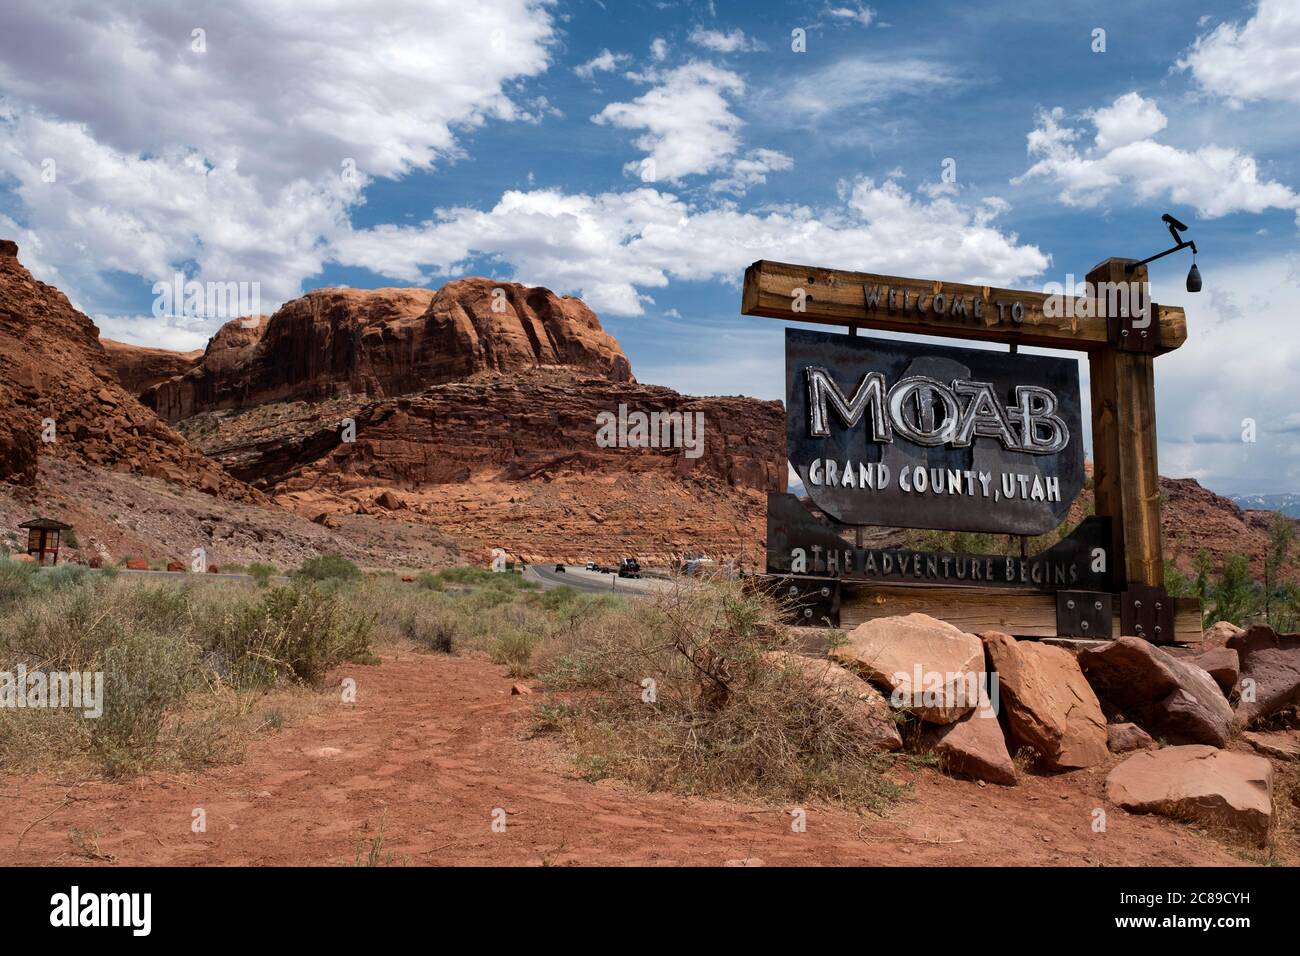 Offizielle Autobahn-Begrüßungsschild für die Stadt Moab, Grand County, Utah Stockfoto